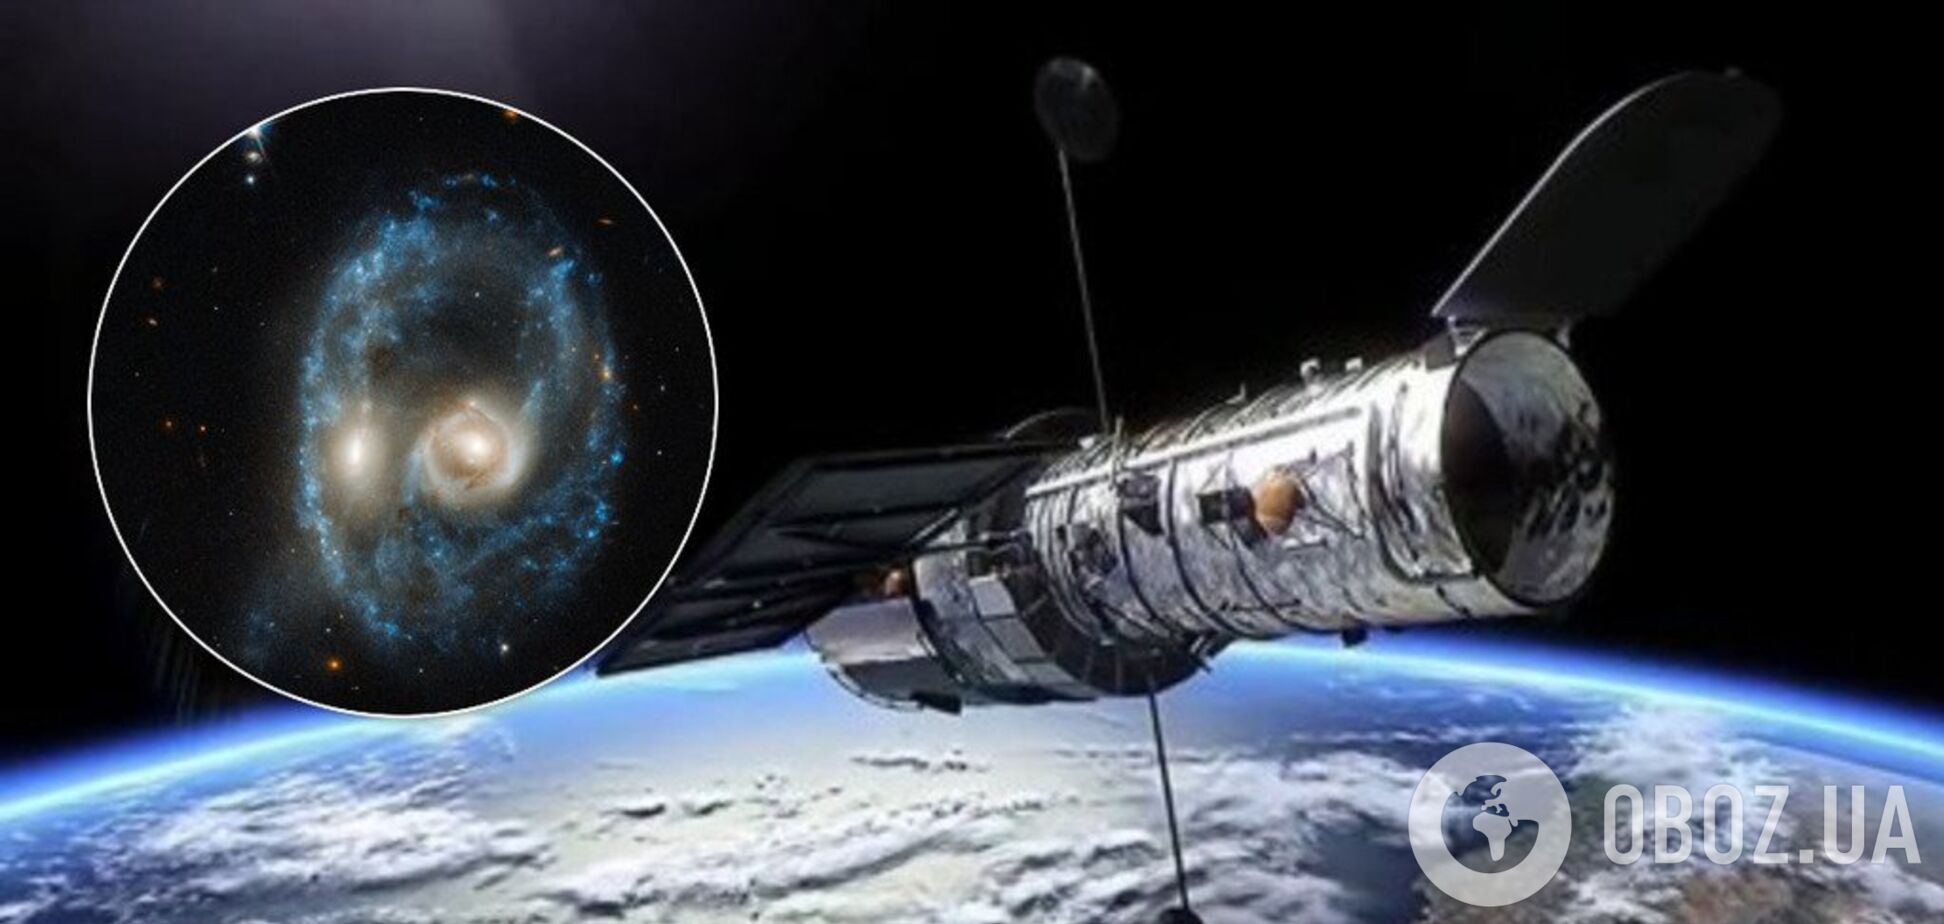 'Хаббл' заснял жуткое 'лицо' в космосе